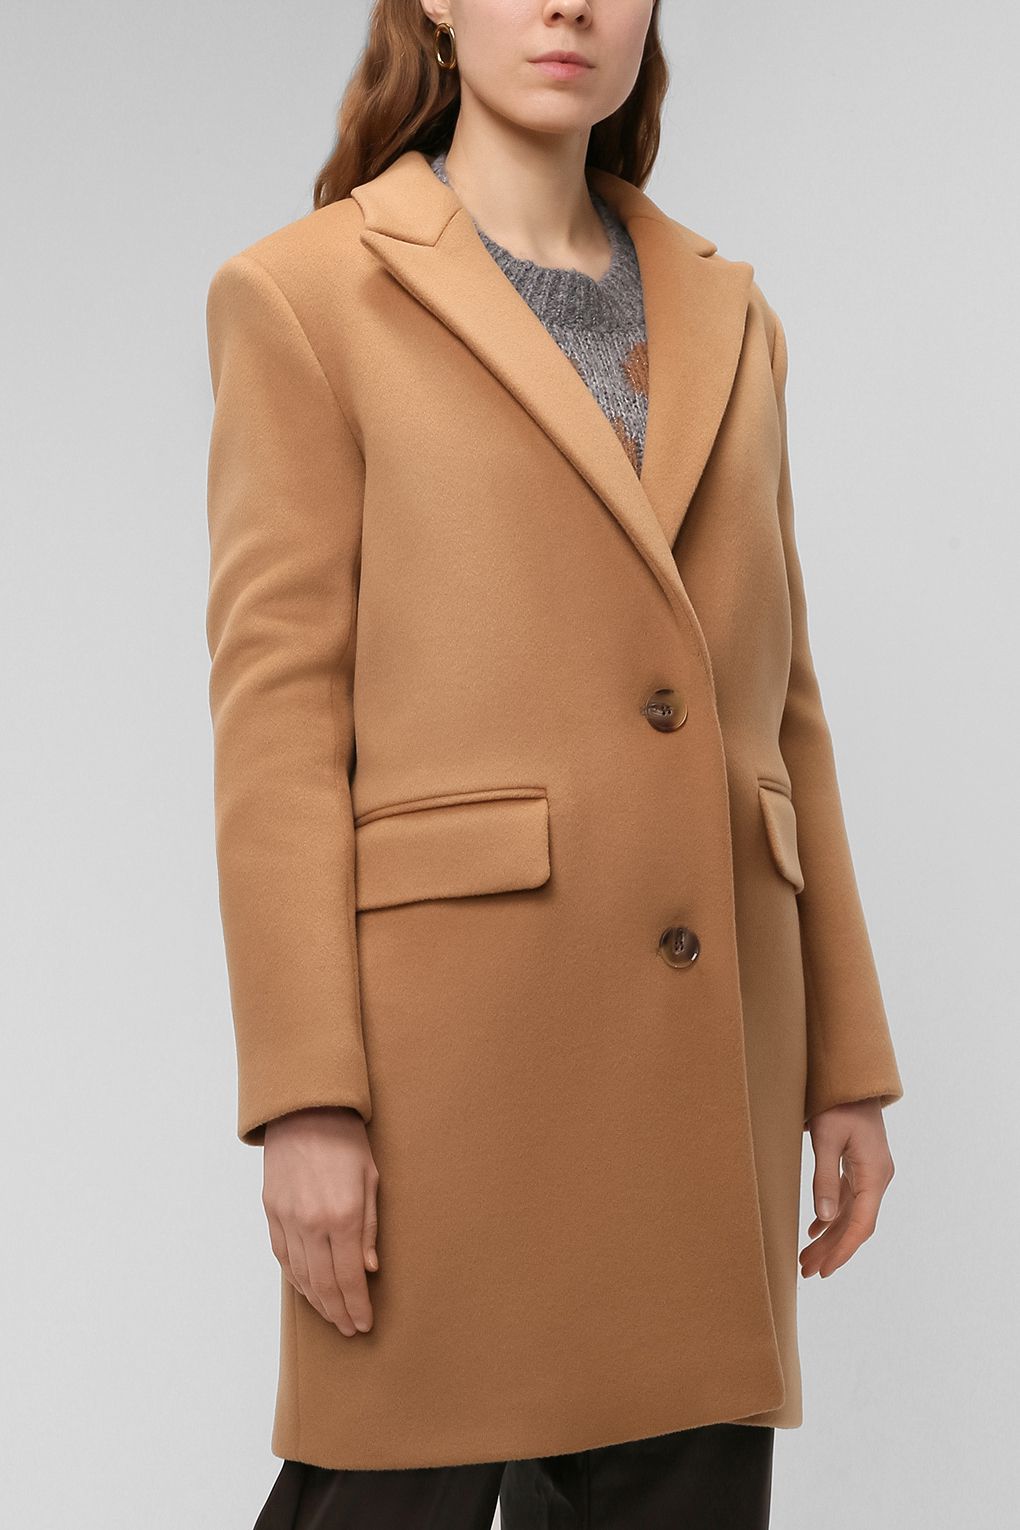 Пальто женское PAOLA RAY PR221-9030-01 коричневое M